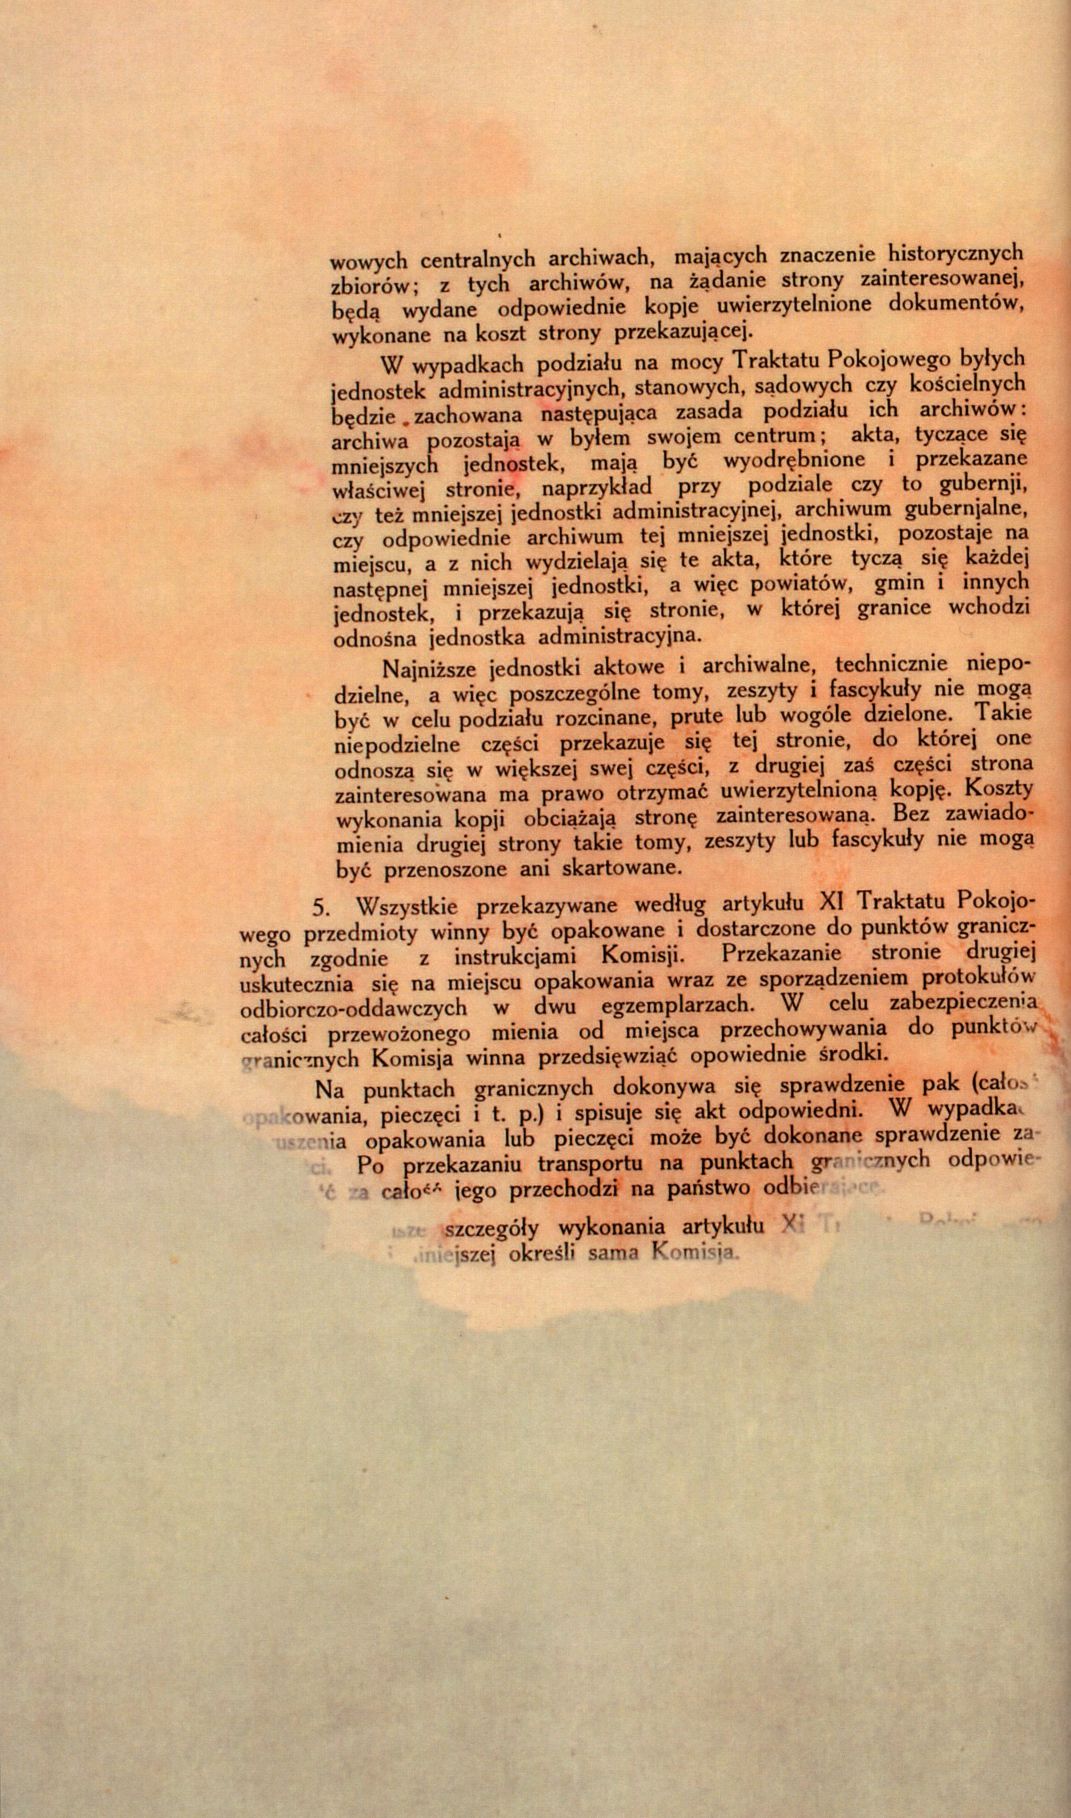 Traktat Pokoju między Polską a Rosją i Ukrainą podpisany w Rydze dnia 18 marca 1921 roku, s. 27, MSZ, sygn. 6739.